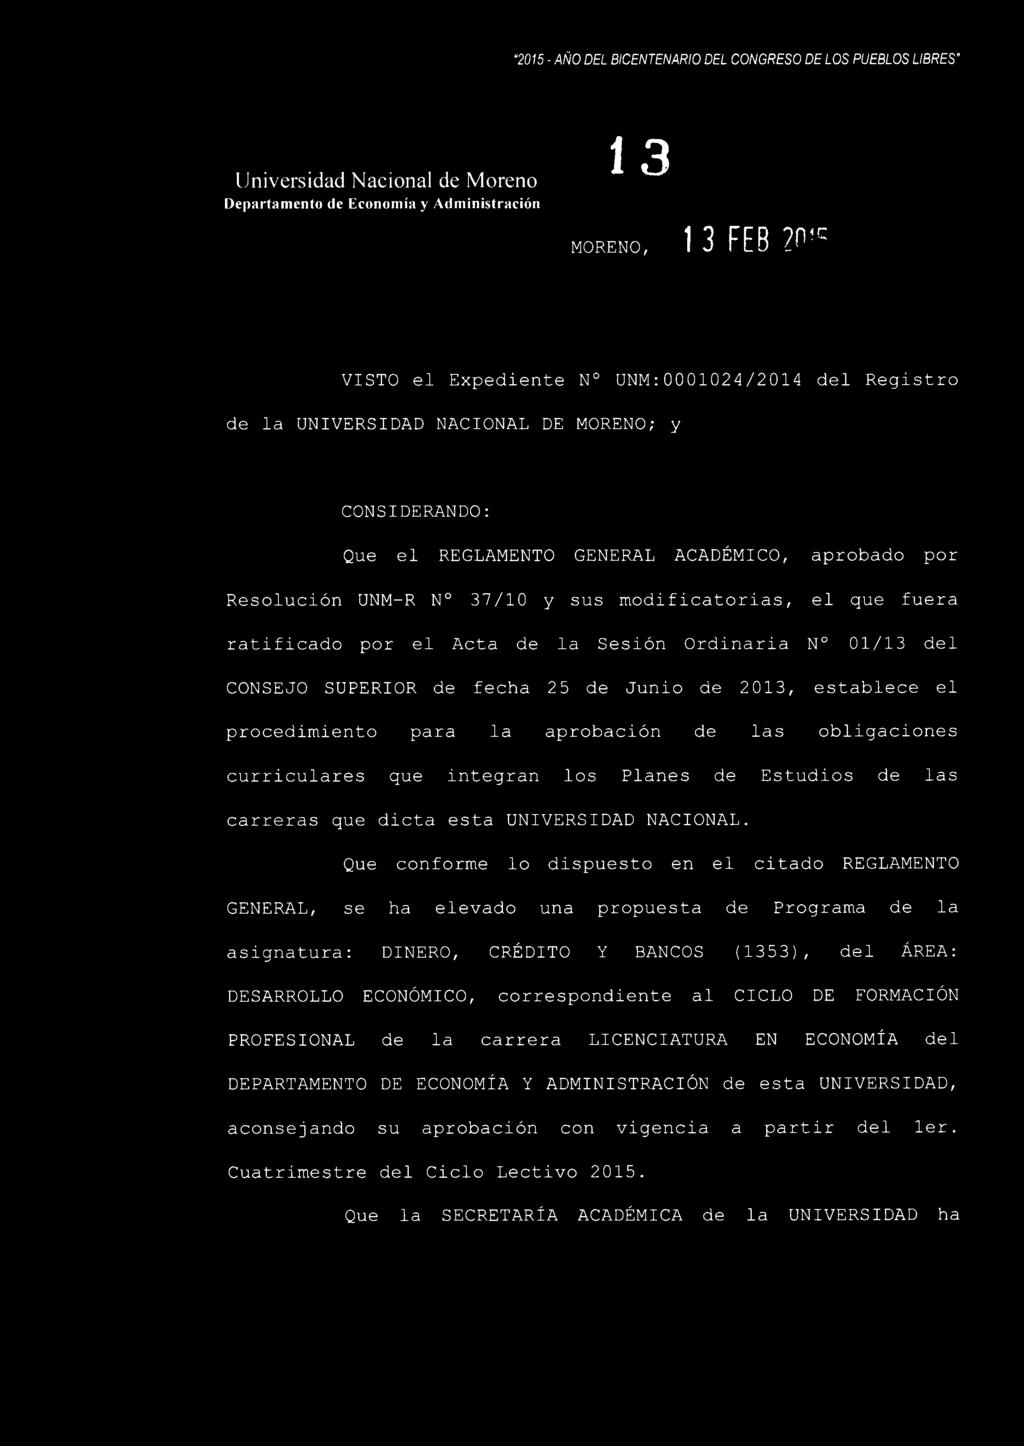 modificatorias, el que fuera ratificado por el Acta de la Sesión Ordinaria N 01/13 del CONSEJO SUPERIOR de fecha 25 de Junio de 2013, establece el procedimiento para la aprobación de las obligaciones